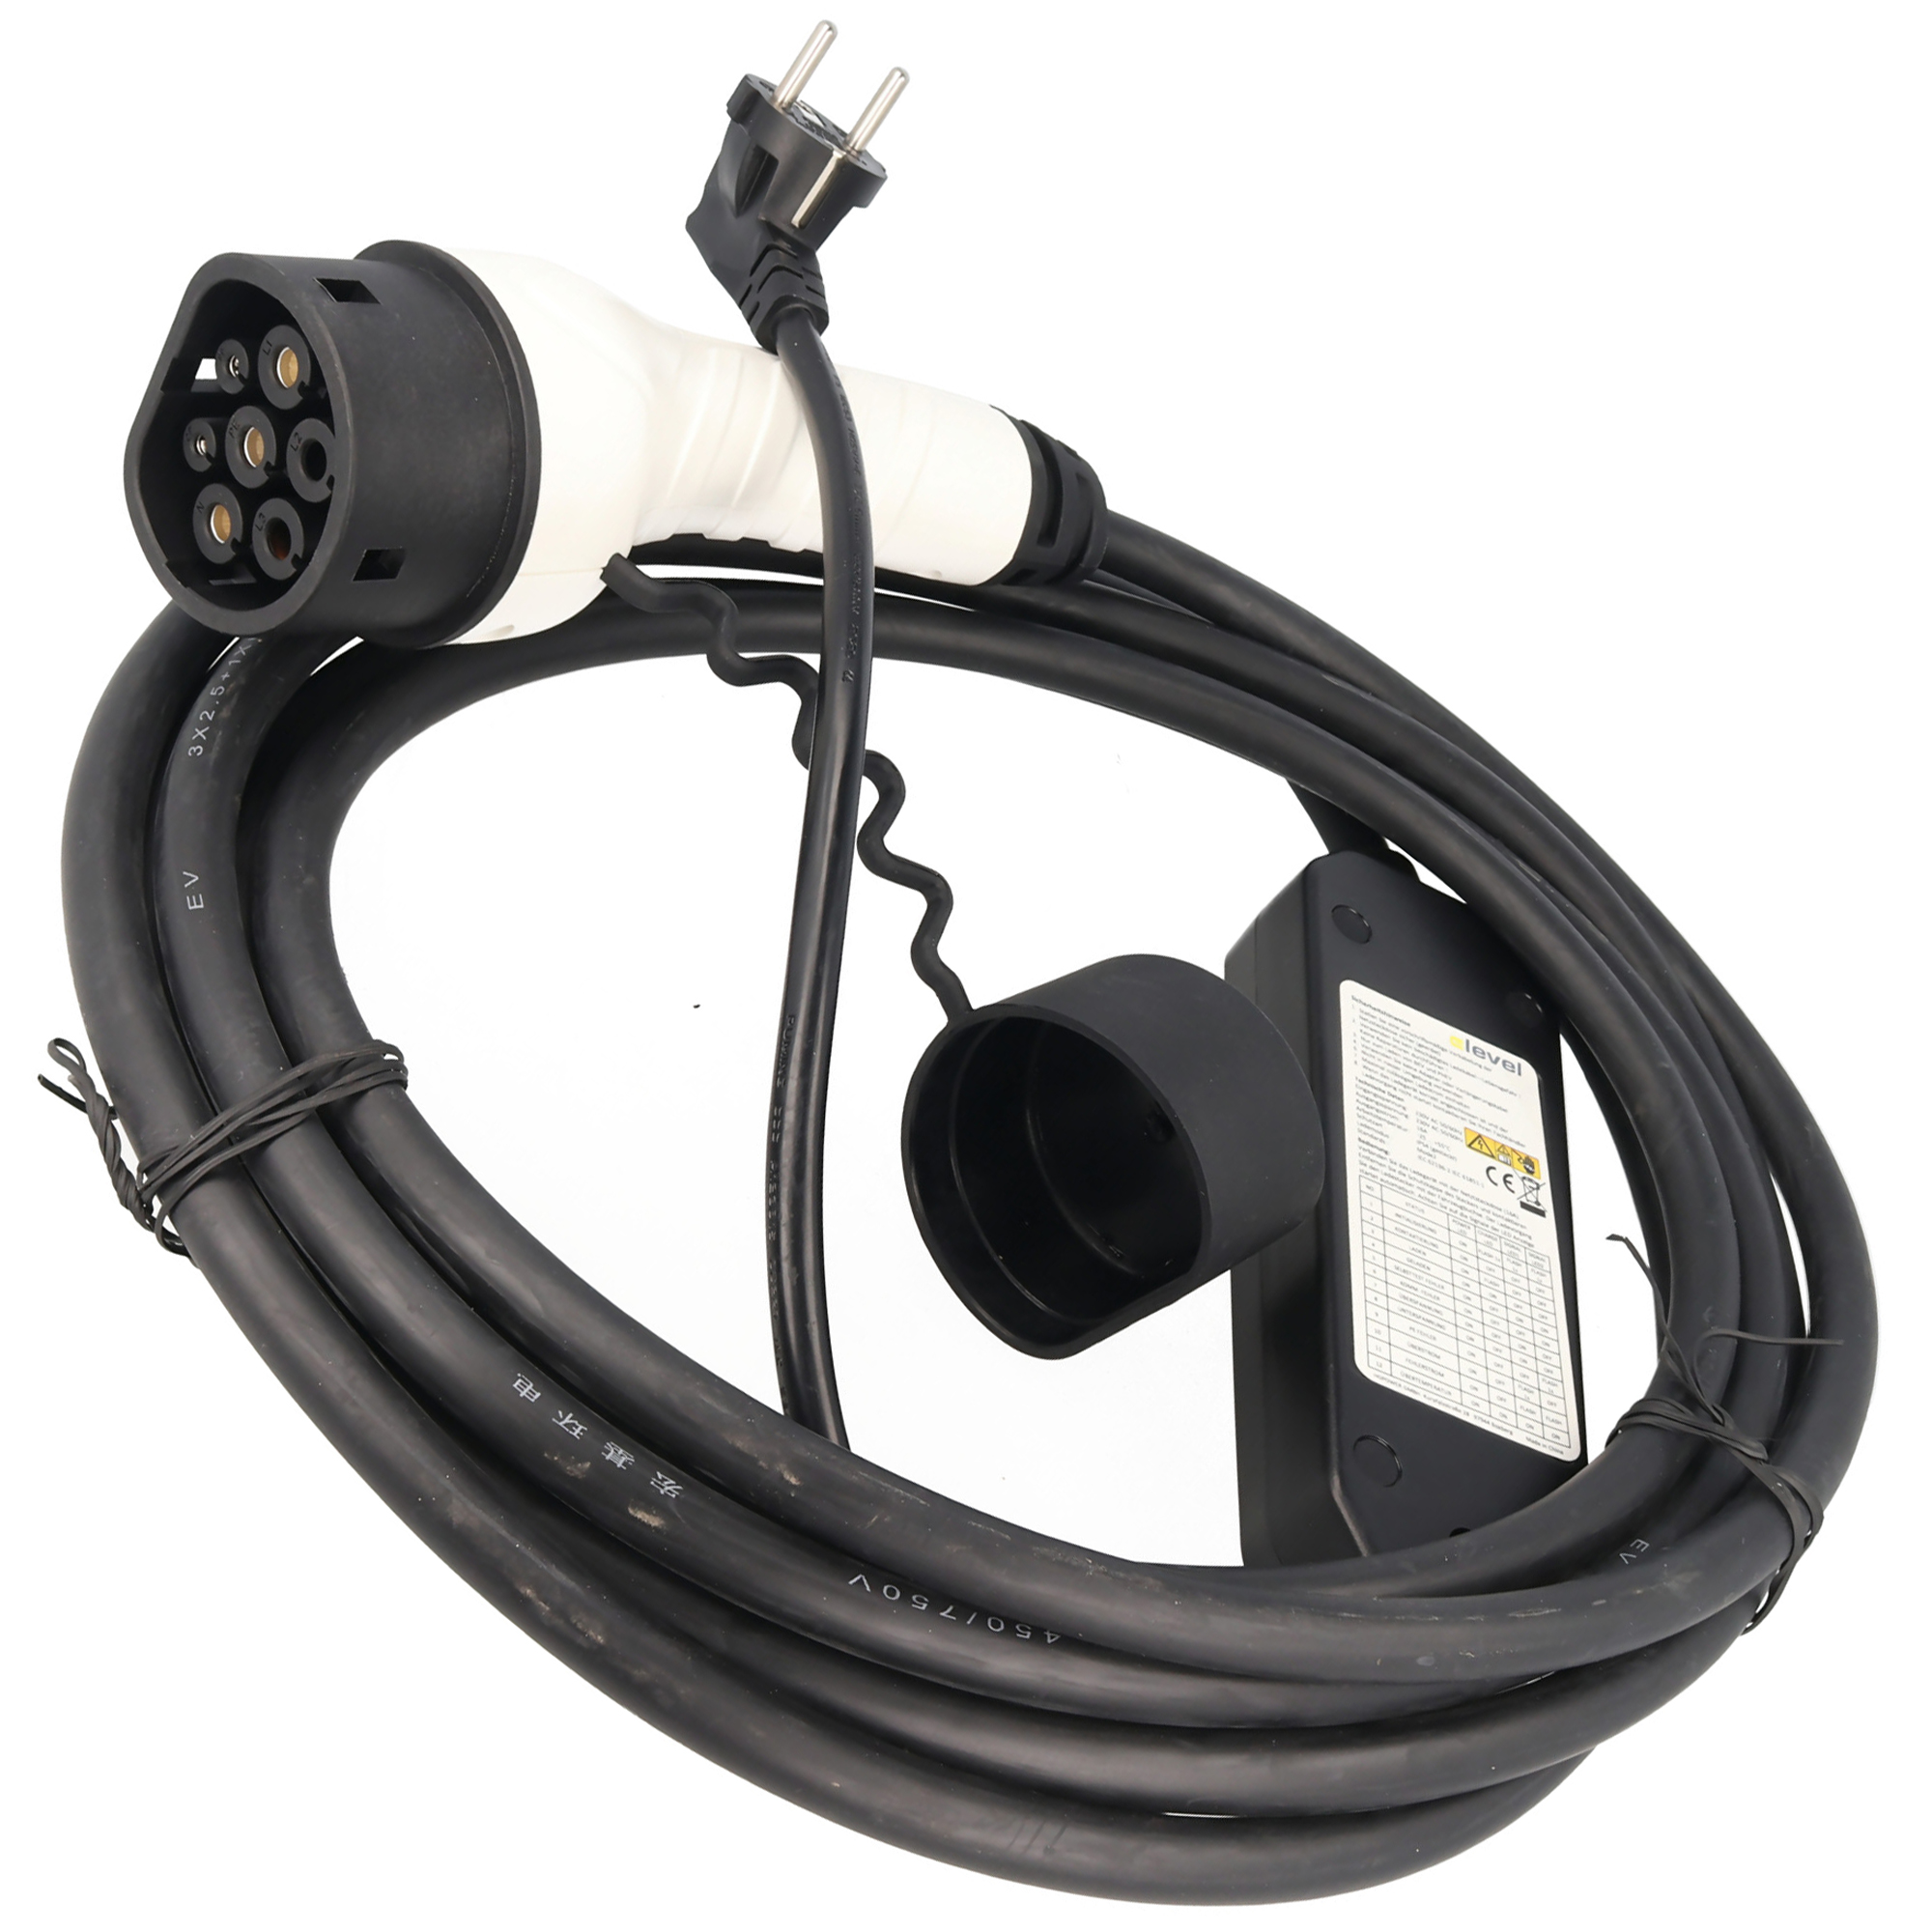 Ladekabel für Elektroautos Anschlussart Typ 2 auf Typ 2 EU Norm 62196 EV  charging cable 2KG kaufen